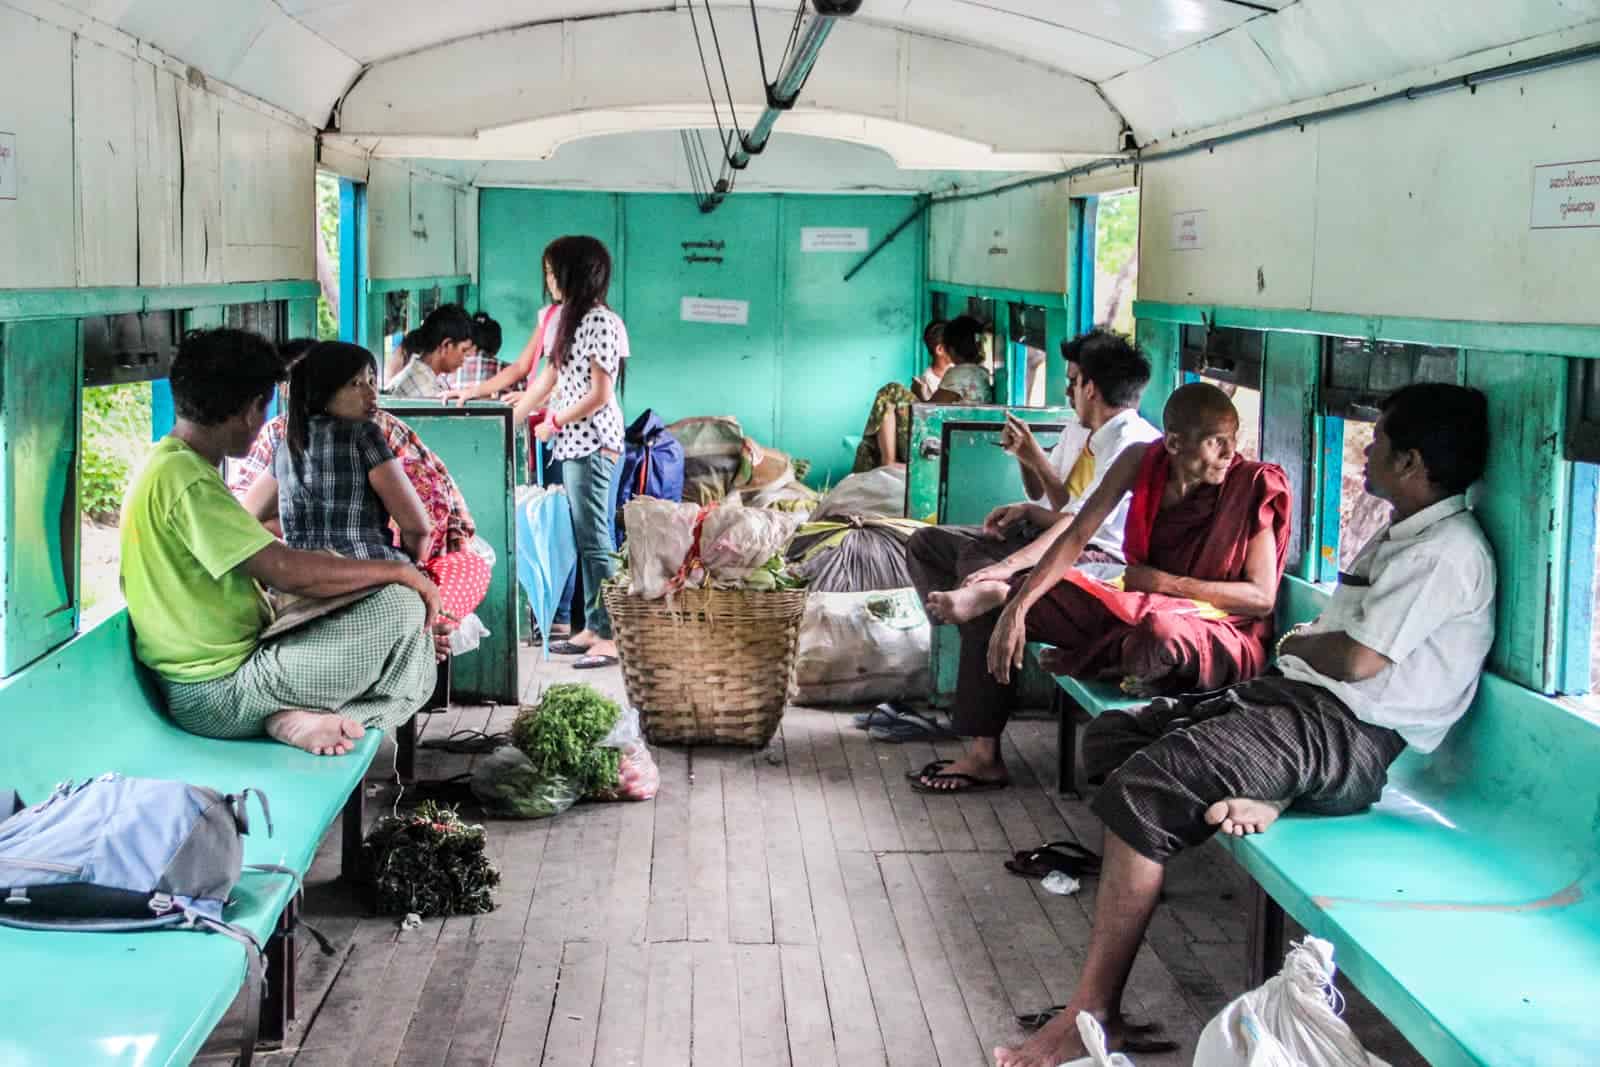 Interior of Yangon Circular Train in Myanmar